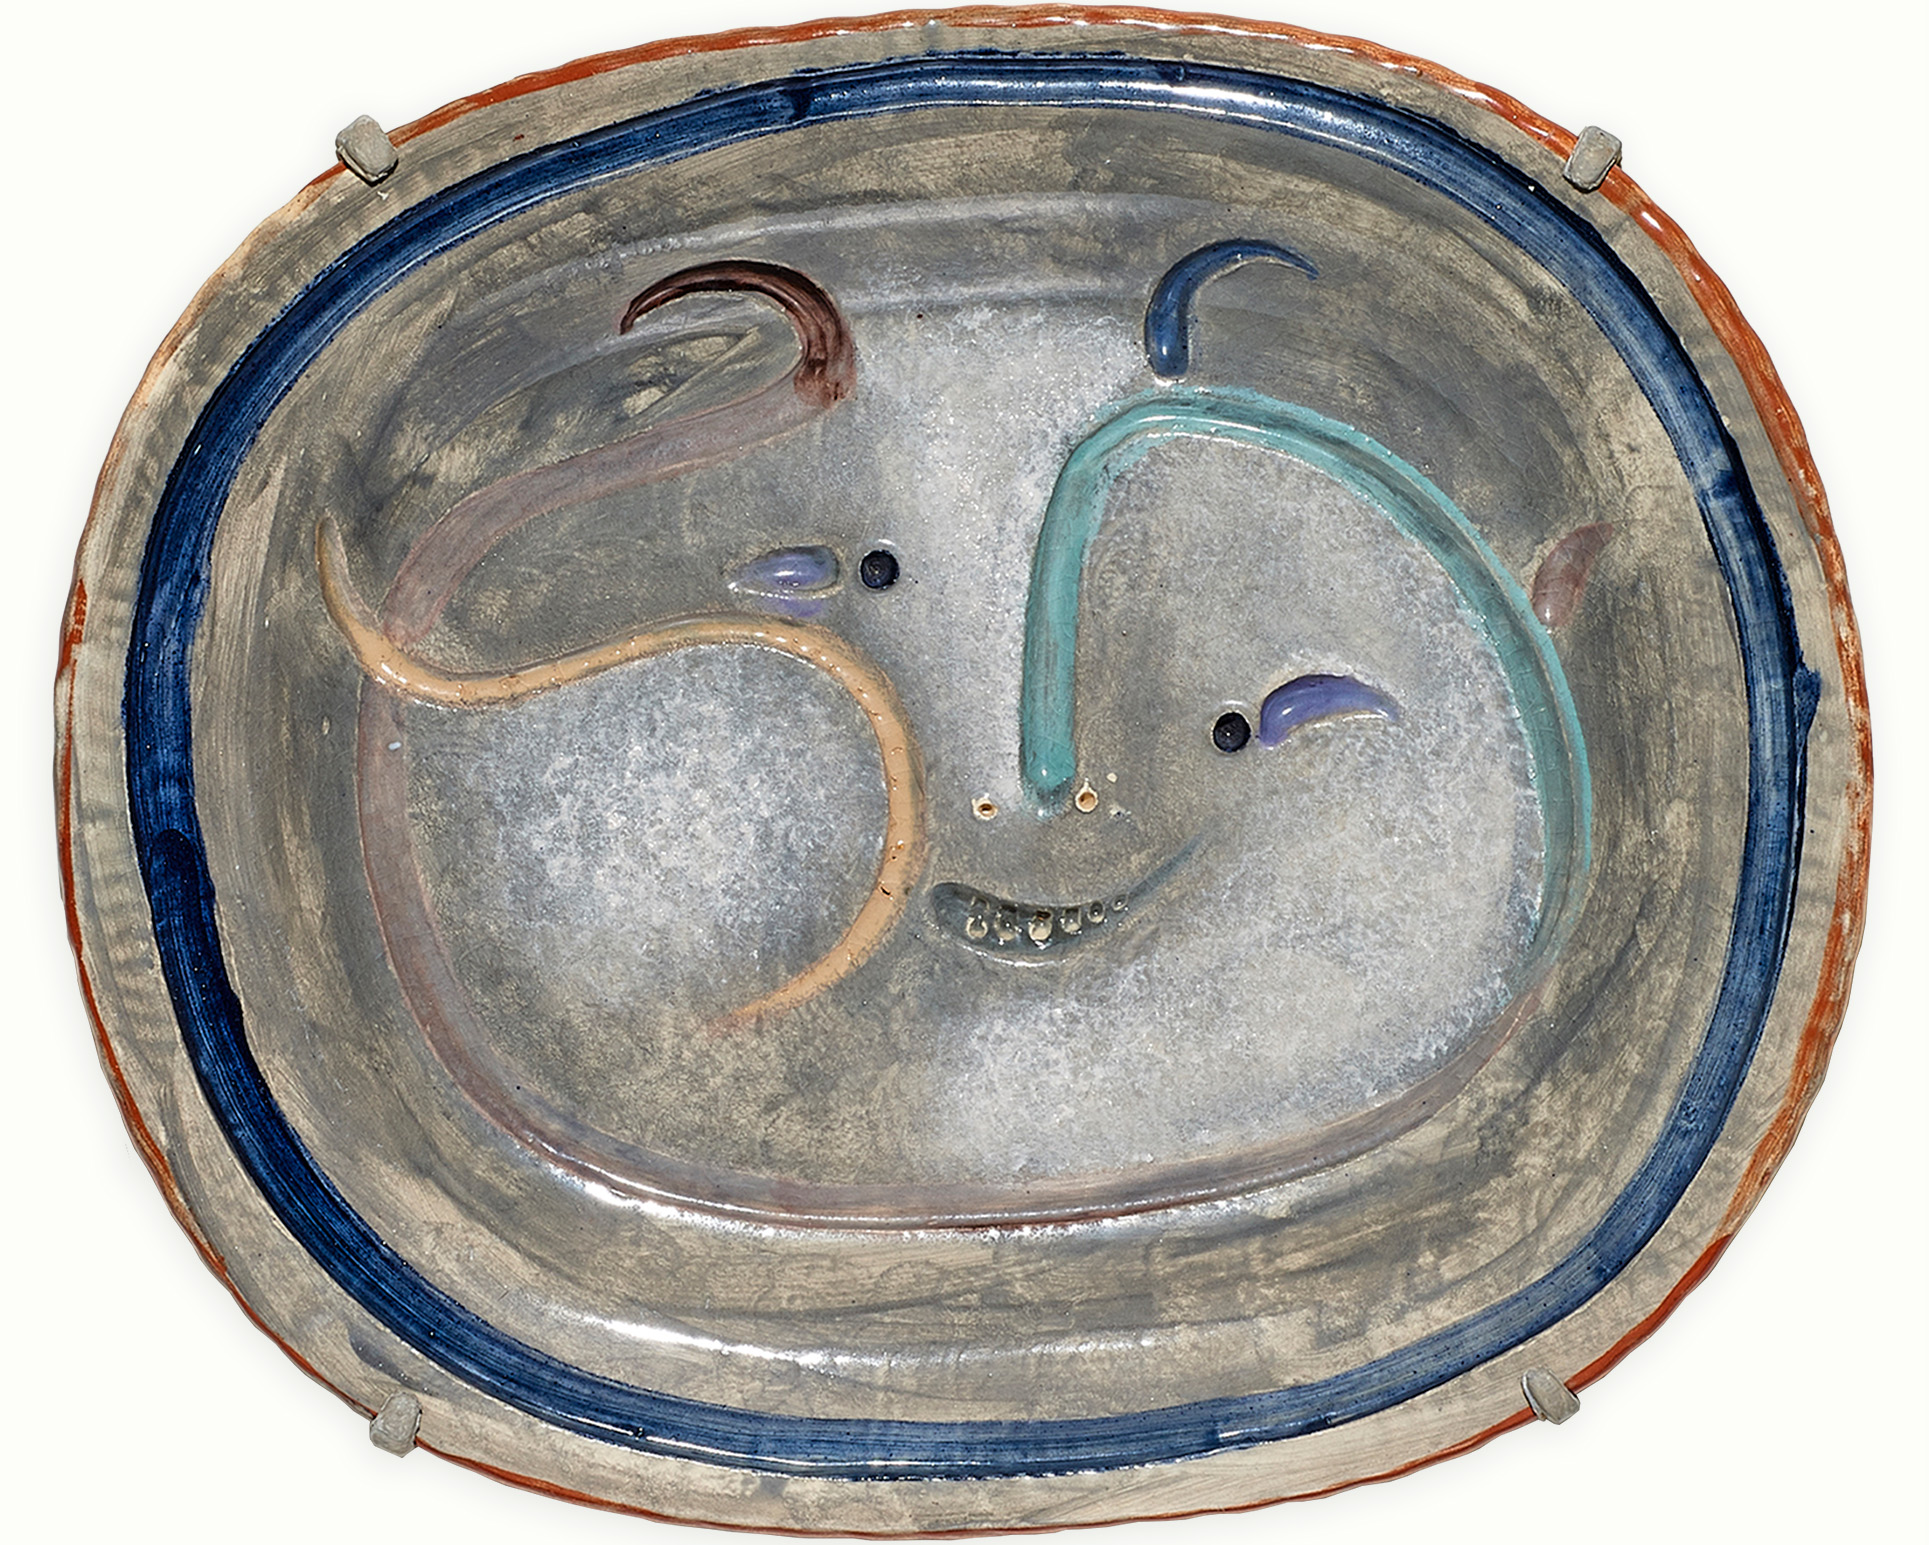 Pablo Picasso (Spanish, 1881–1973), Visage Masque, 1947, ceramic plate, 12.5″ x 15″ (31.75 x 38.1 cm).